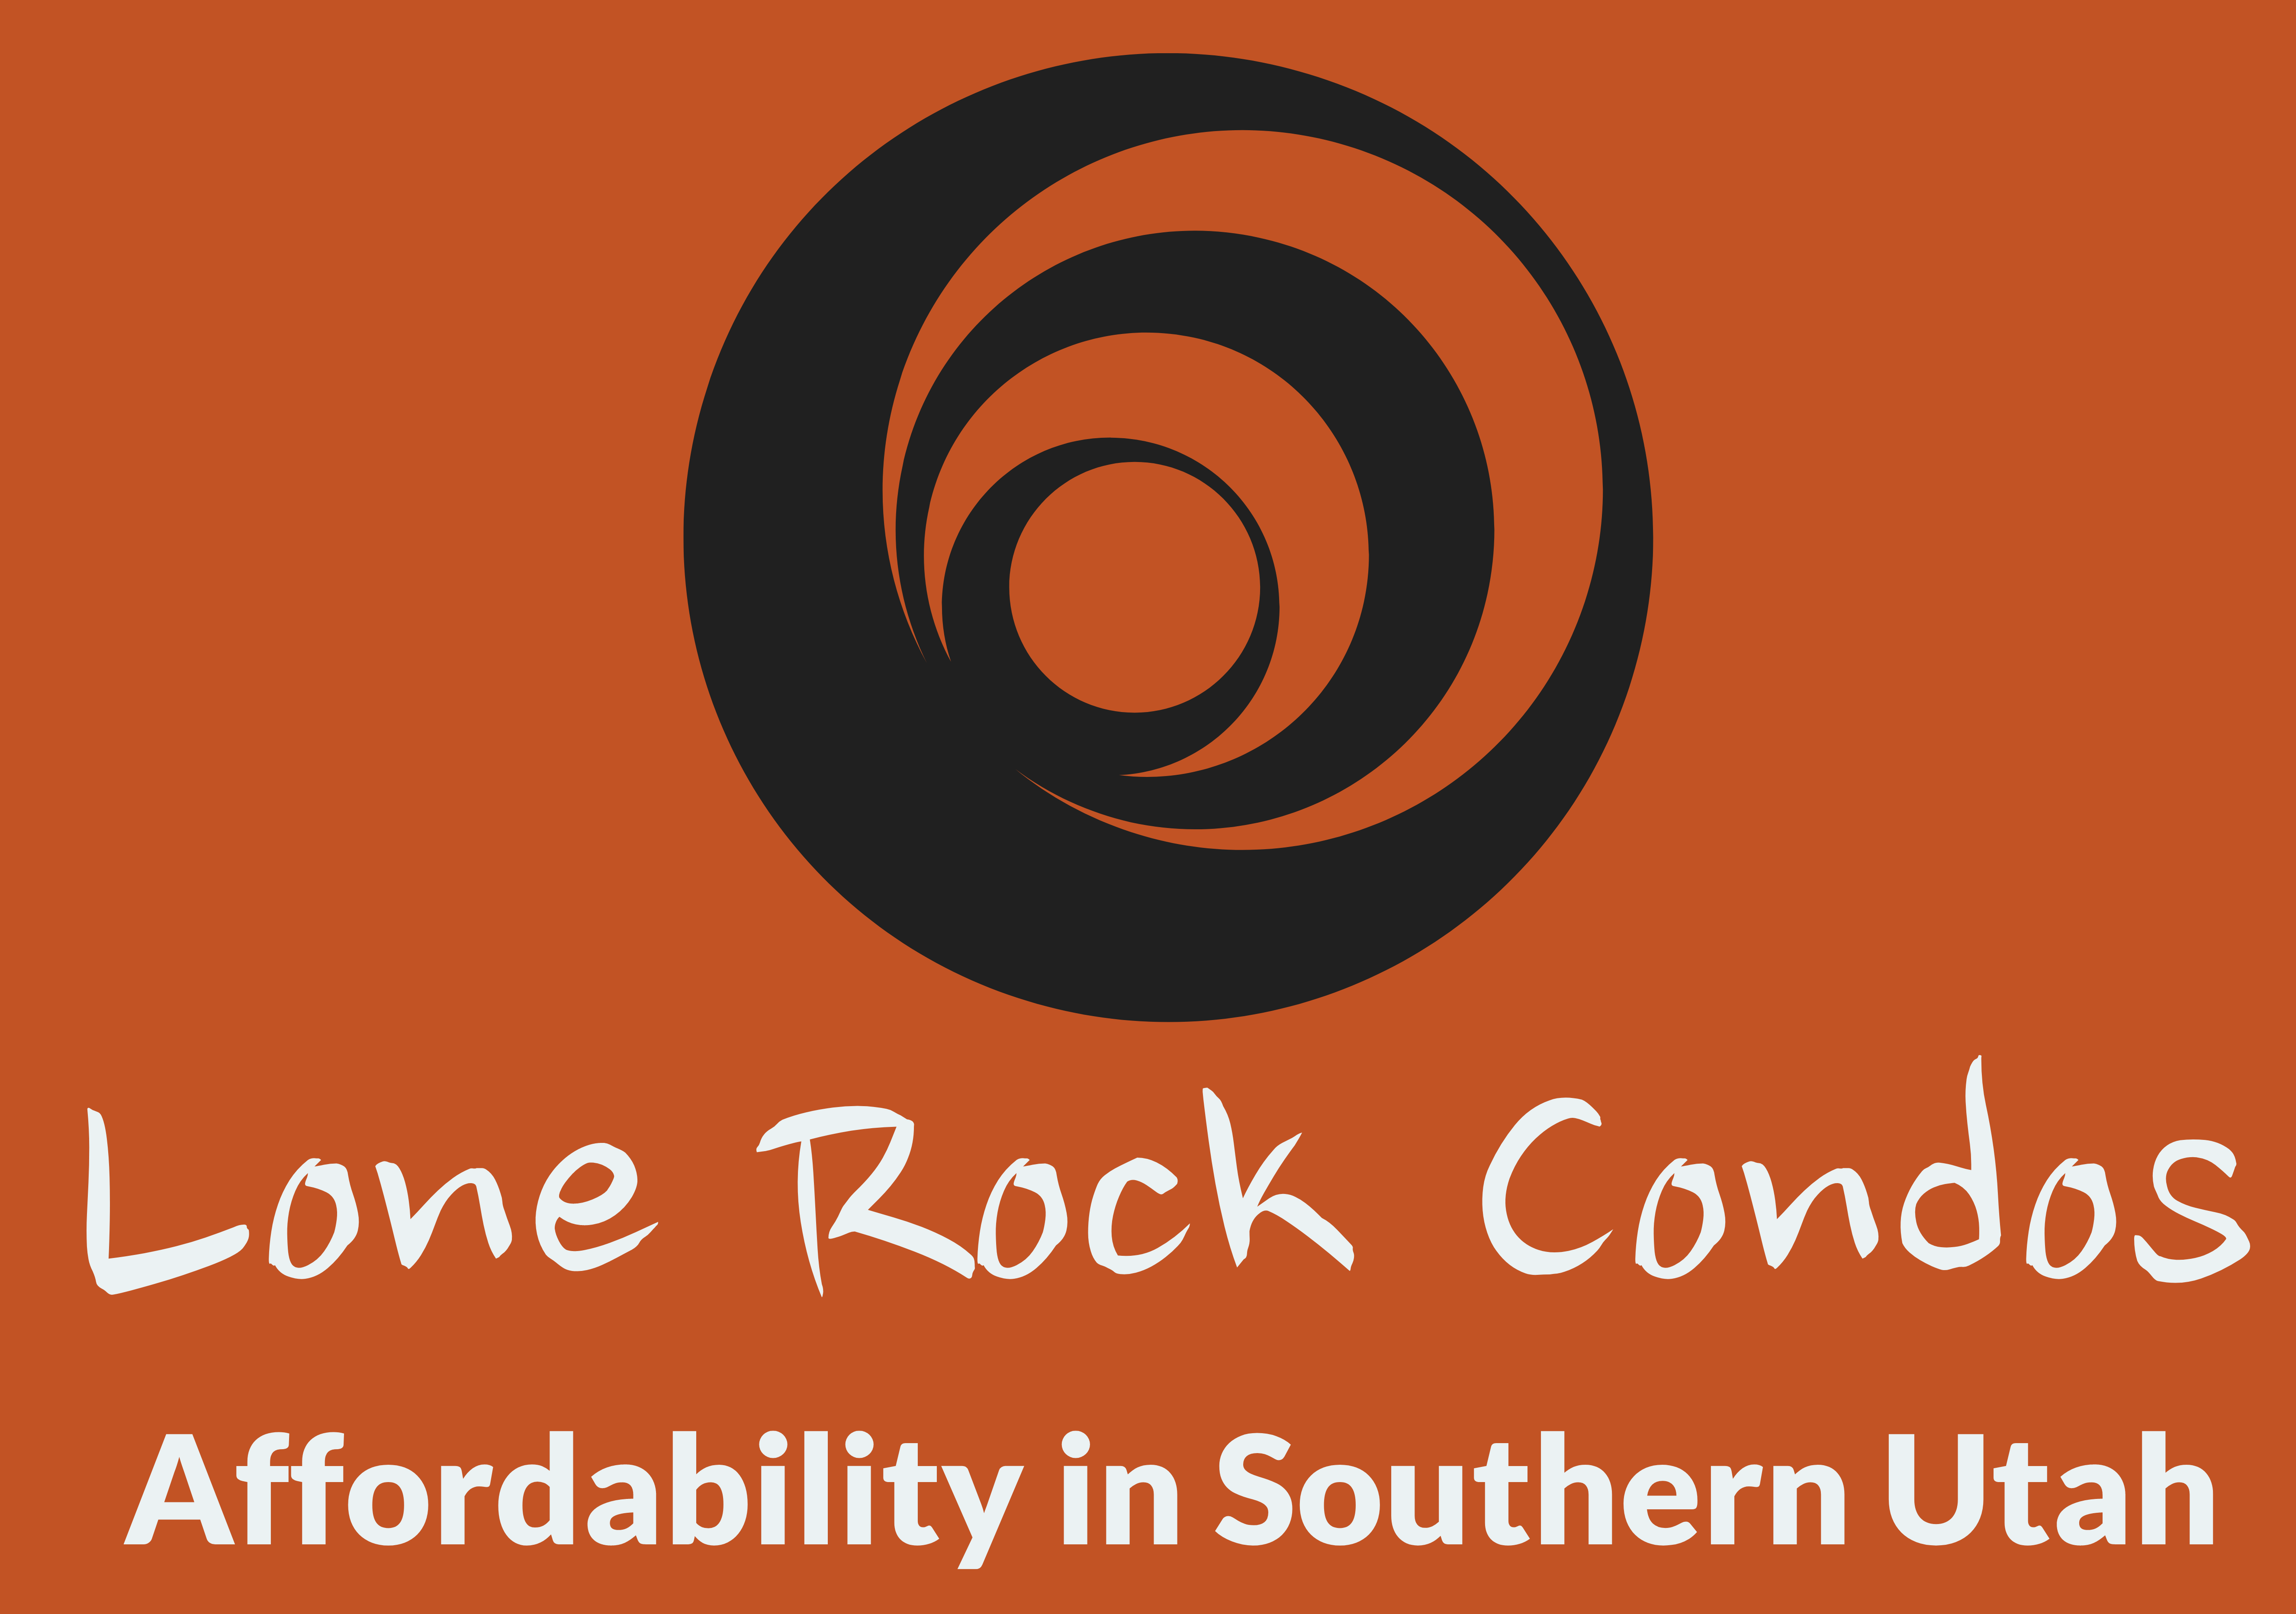 Lone Rock Condos